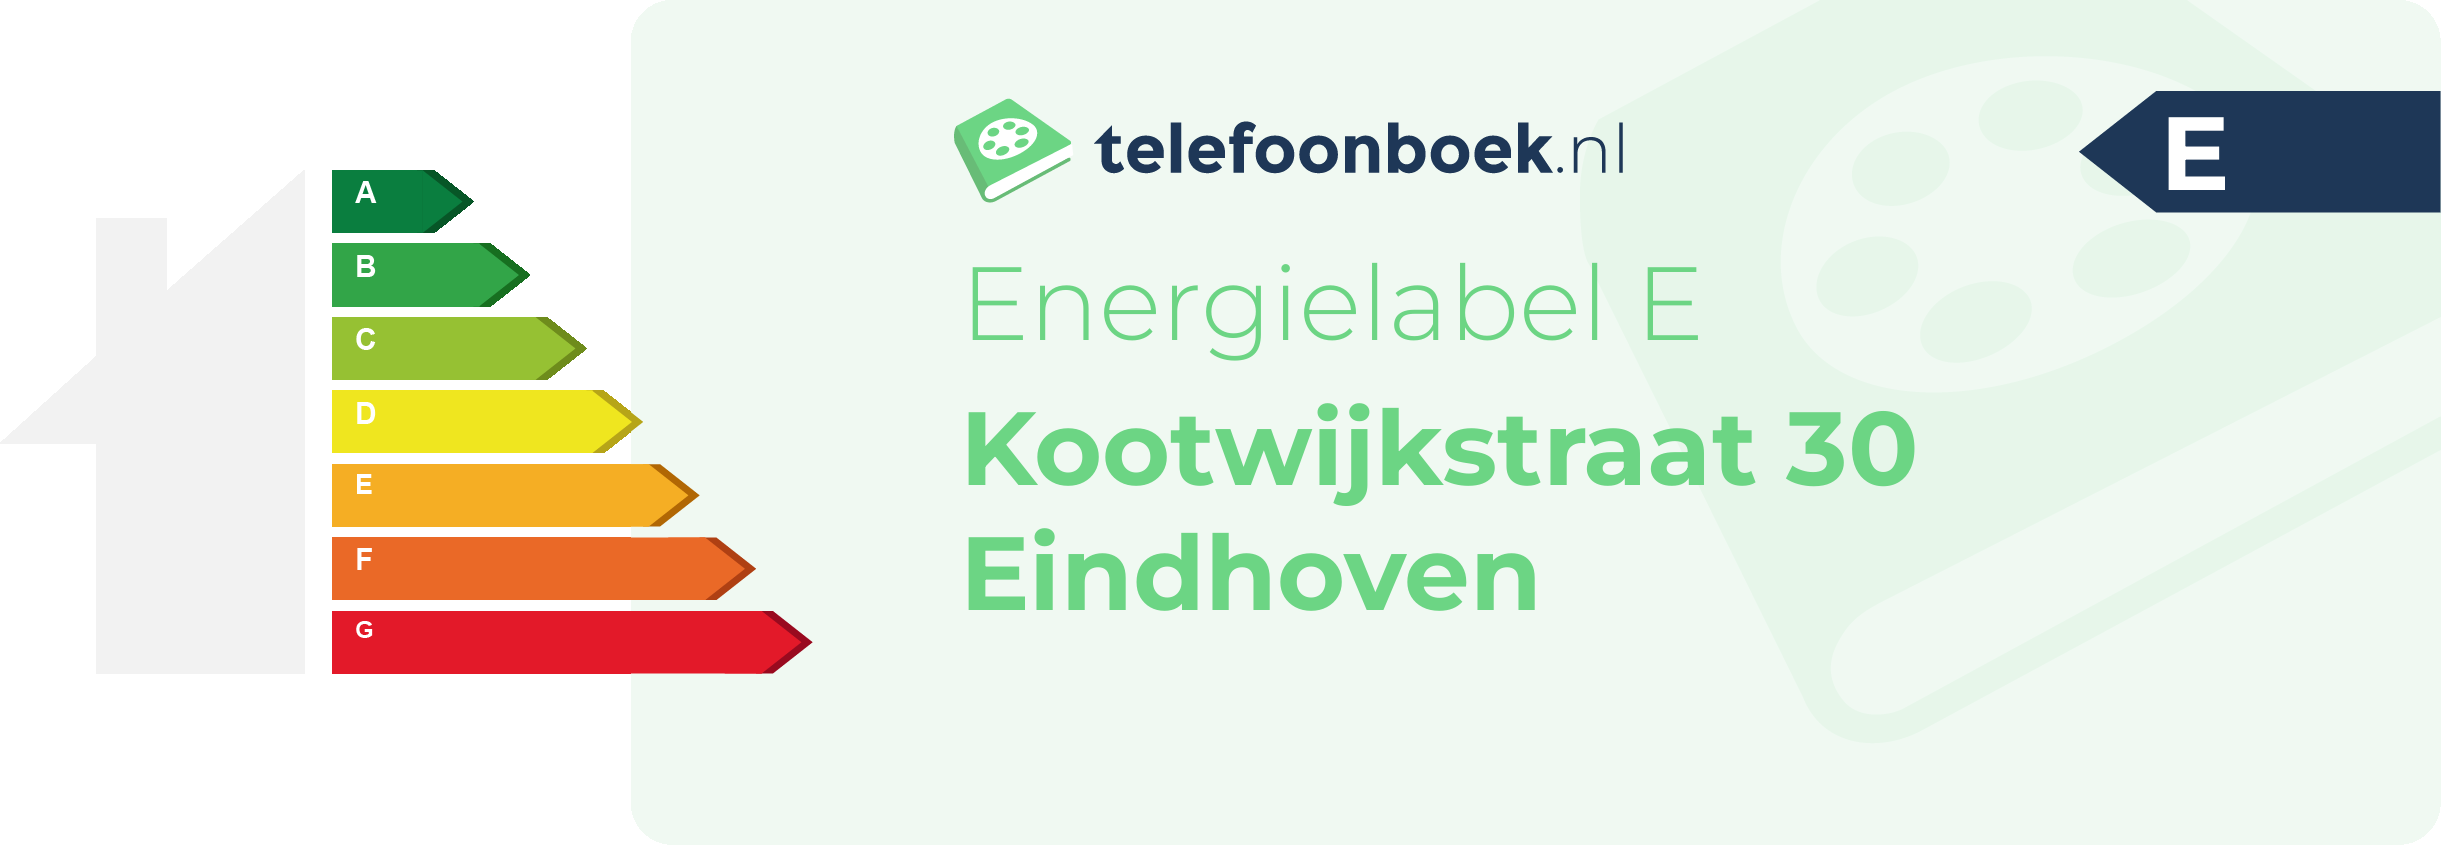 Energielabel Kootwijkstraat 30 Eindhoven